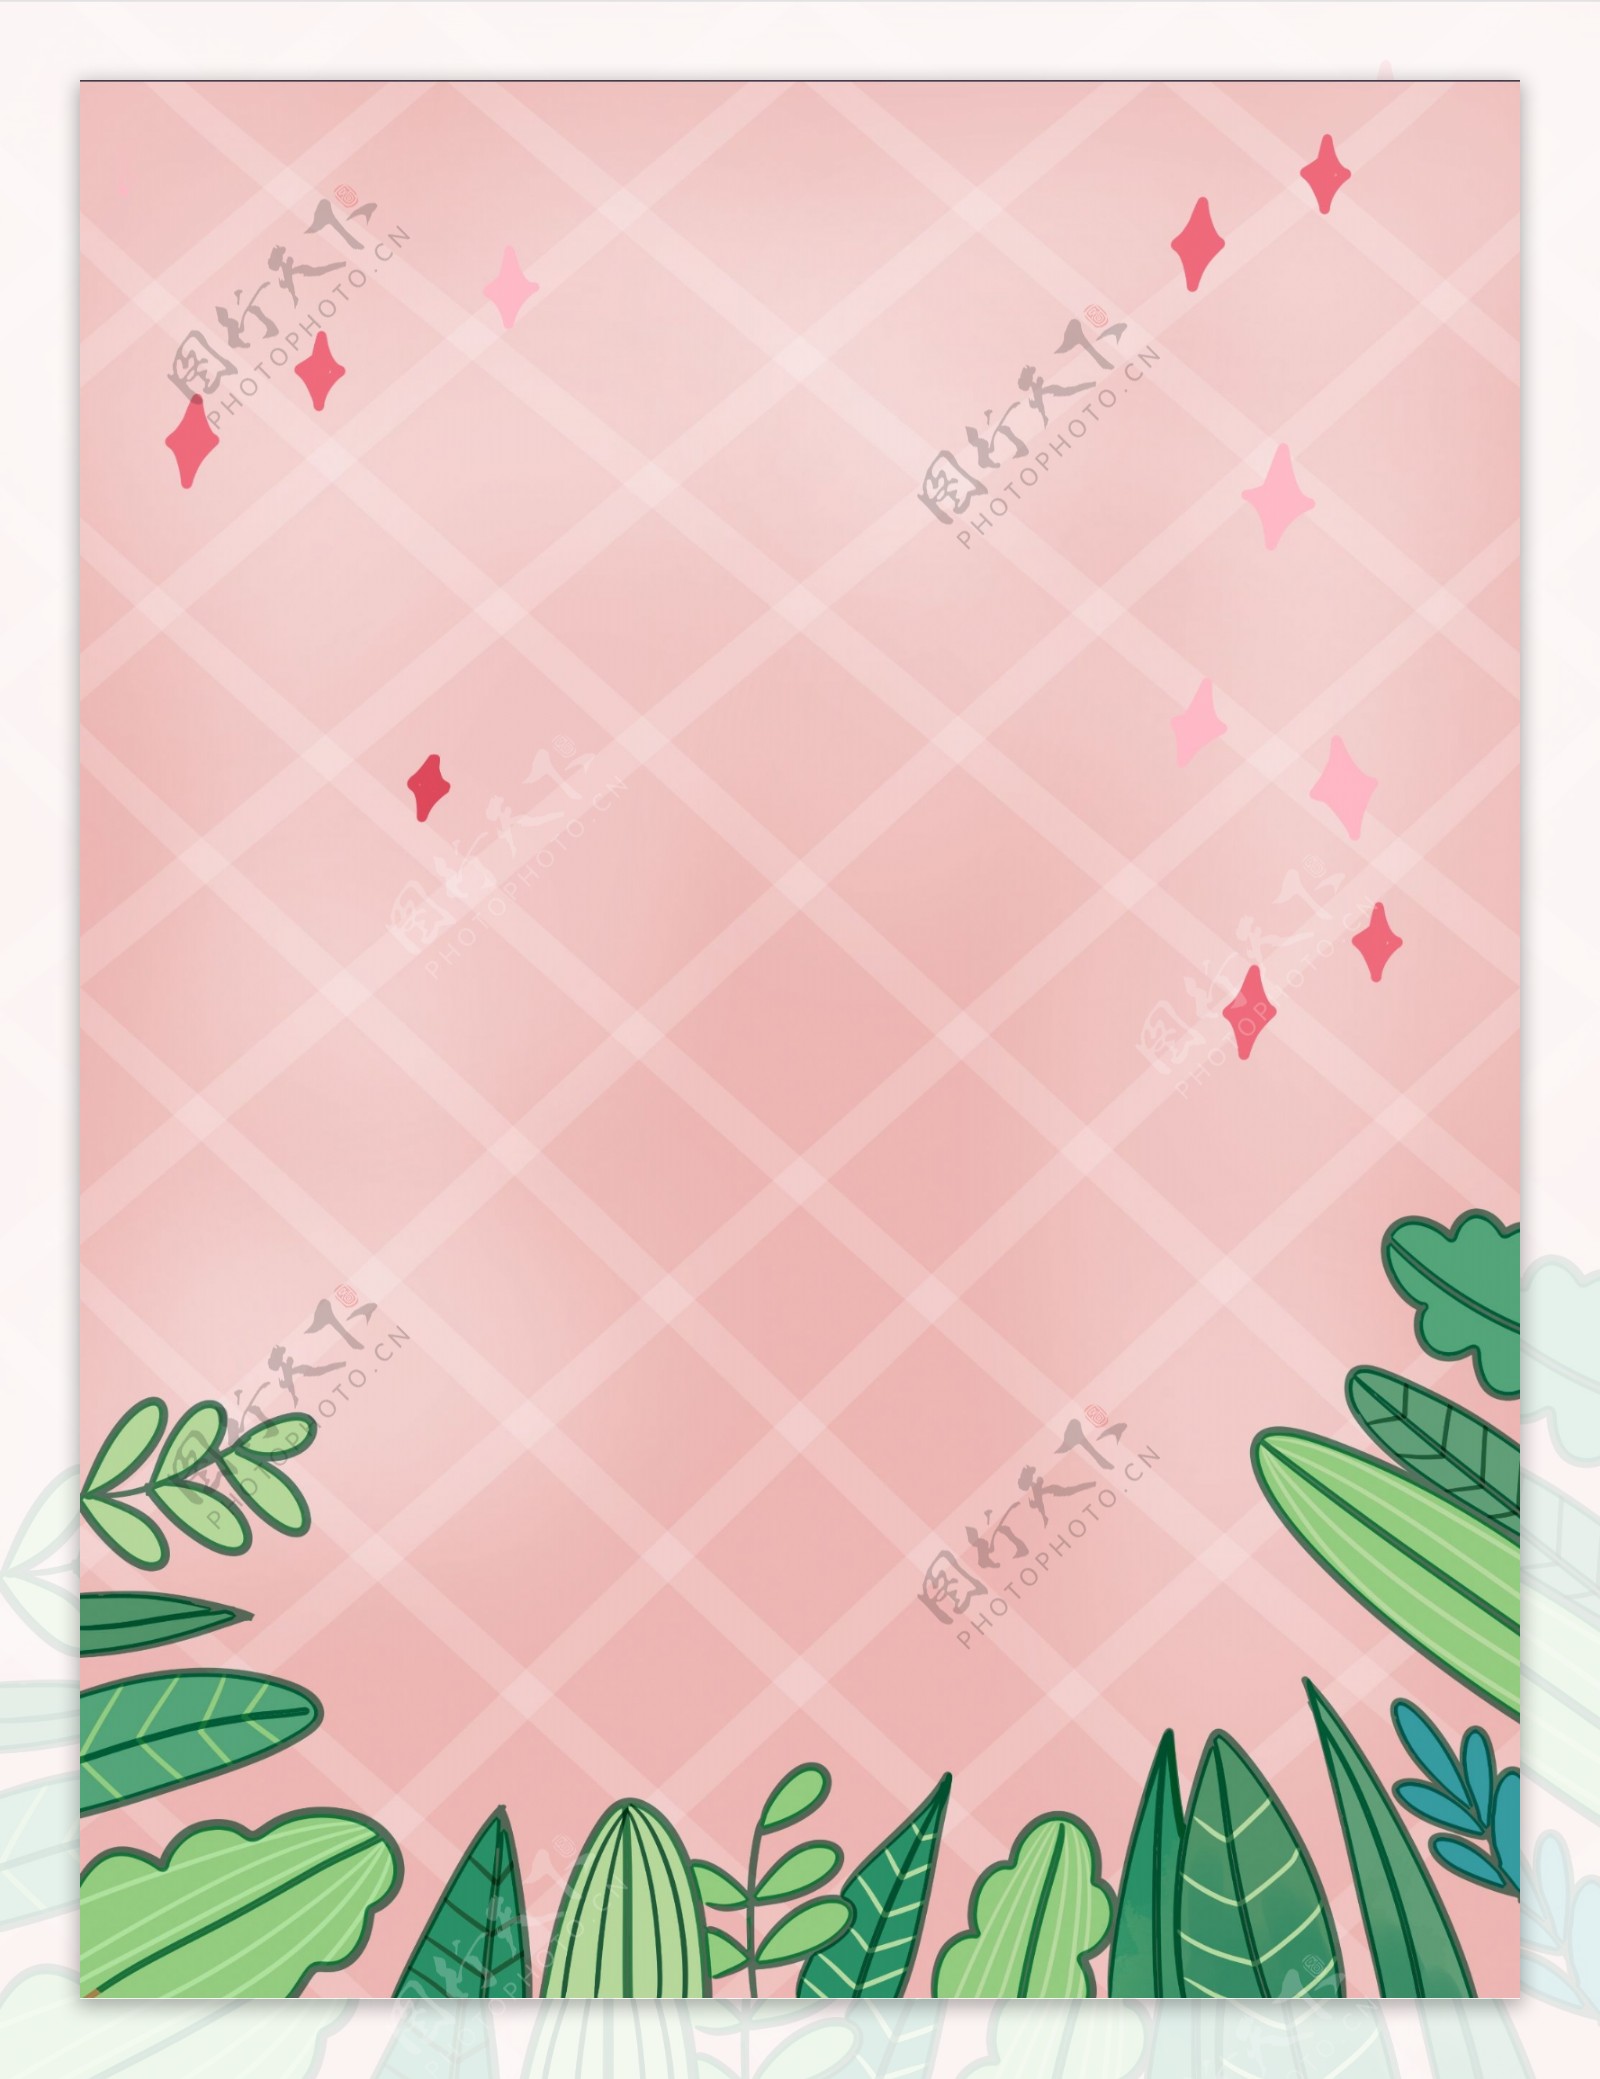 粉色格子绿叶背景设计